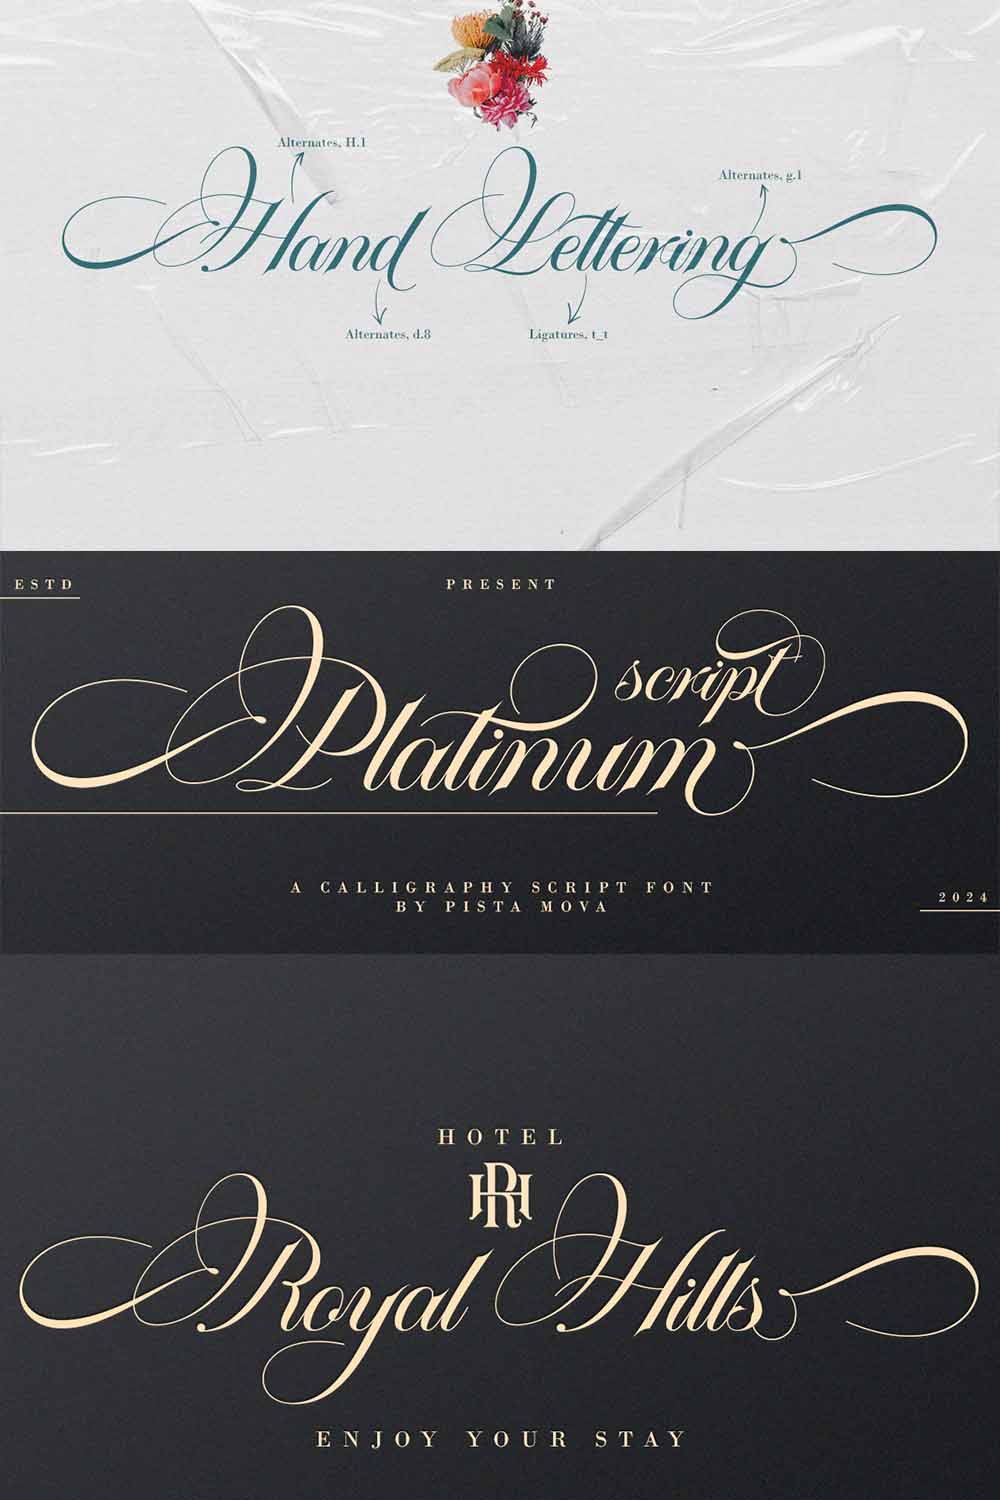 Platinum script pinterest preview image.